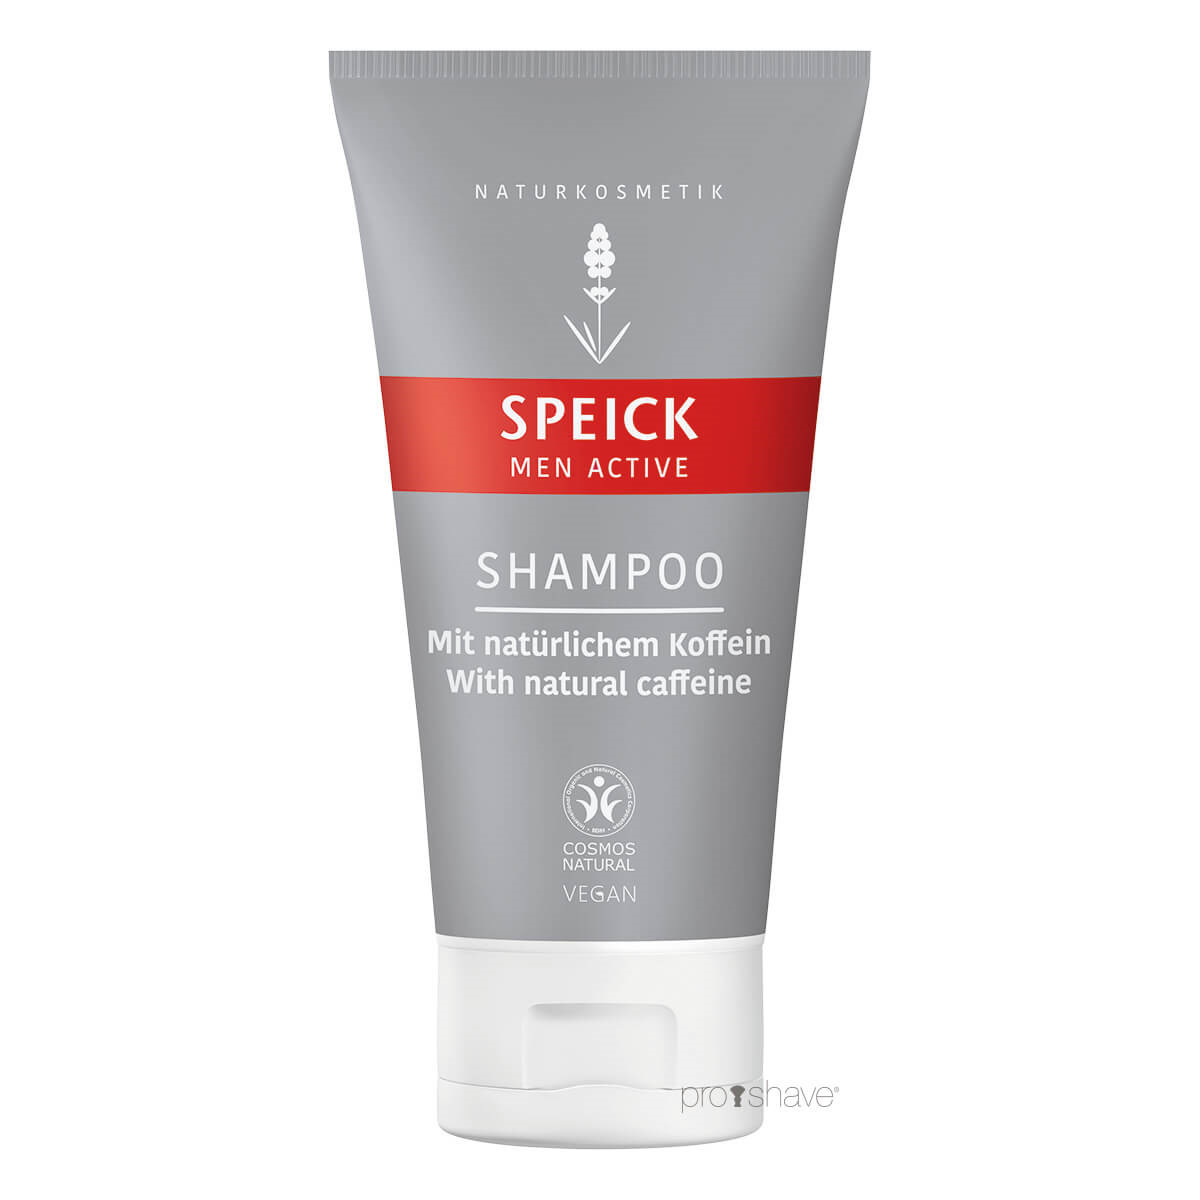 Billede af Speick Men Active Shampoo, 150 ml.